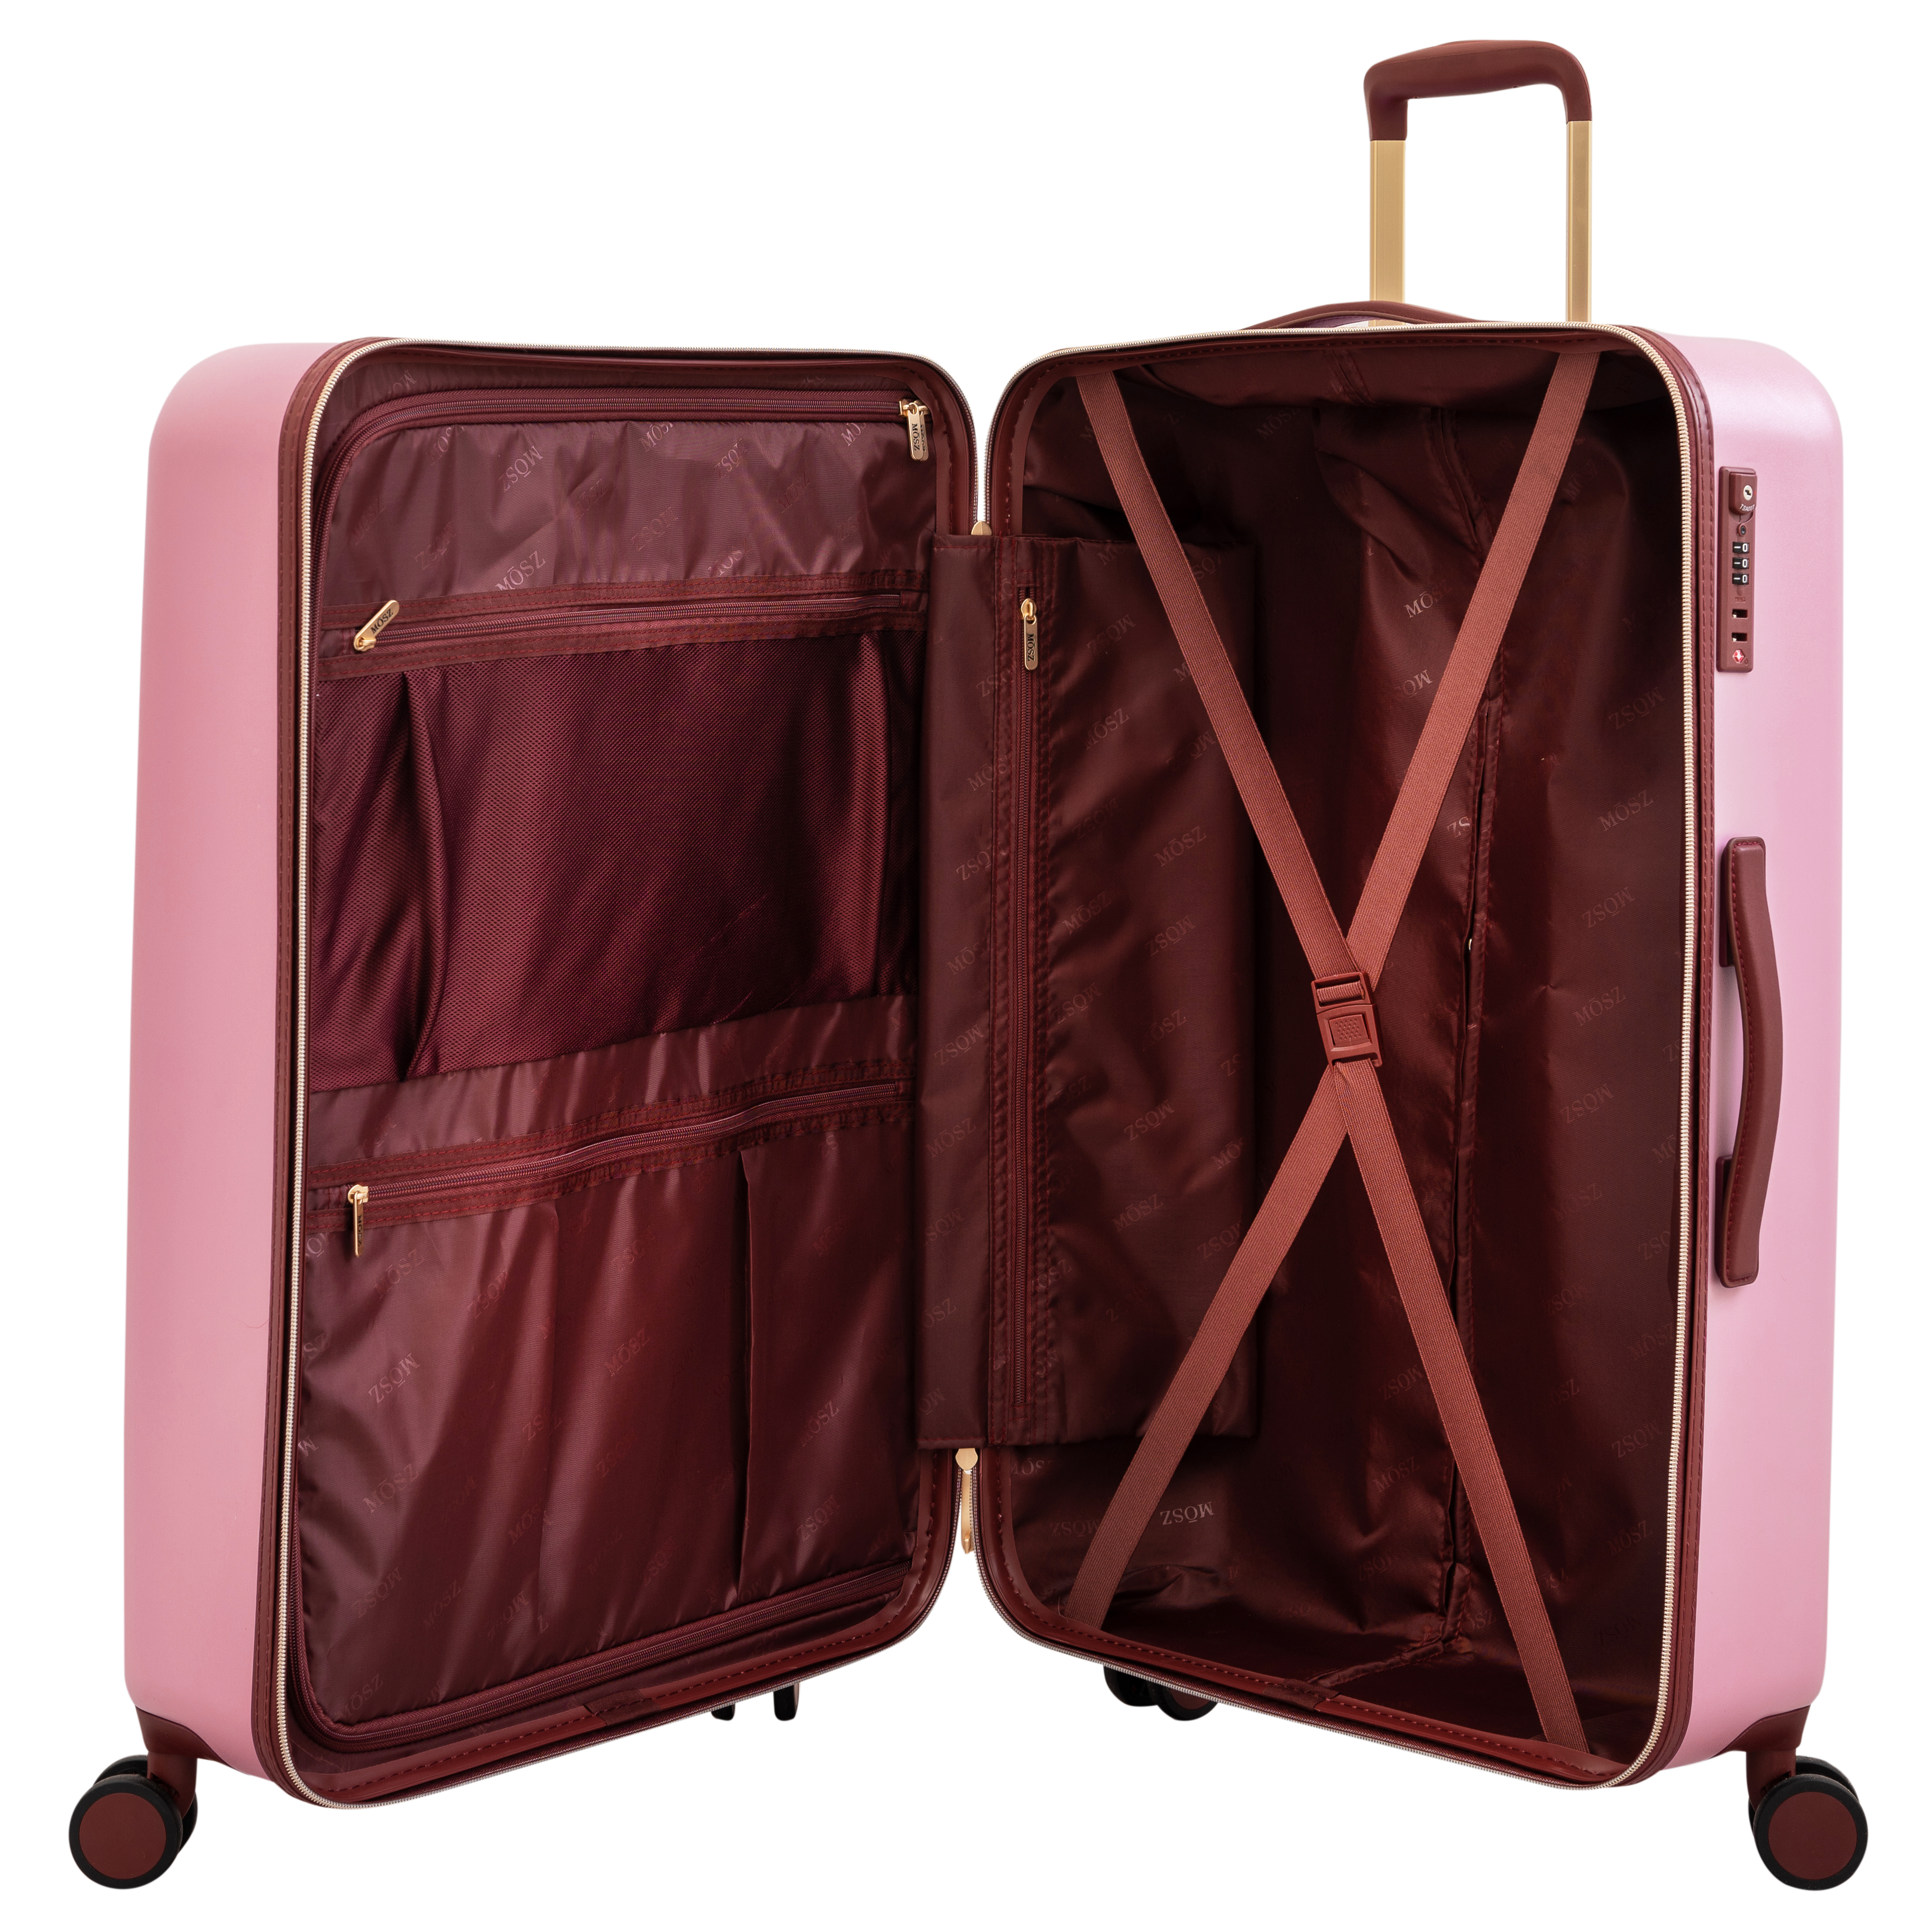 grote roze koffer 76 cm binnenzijde